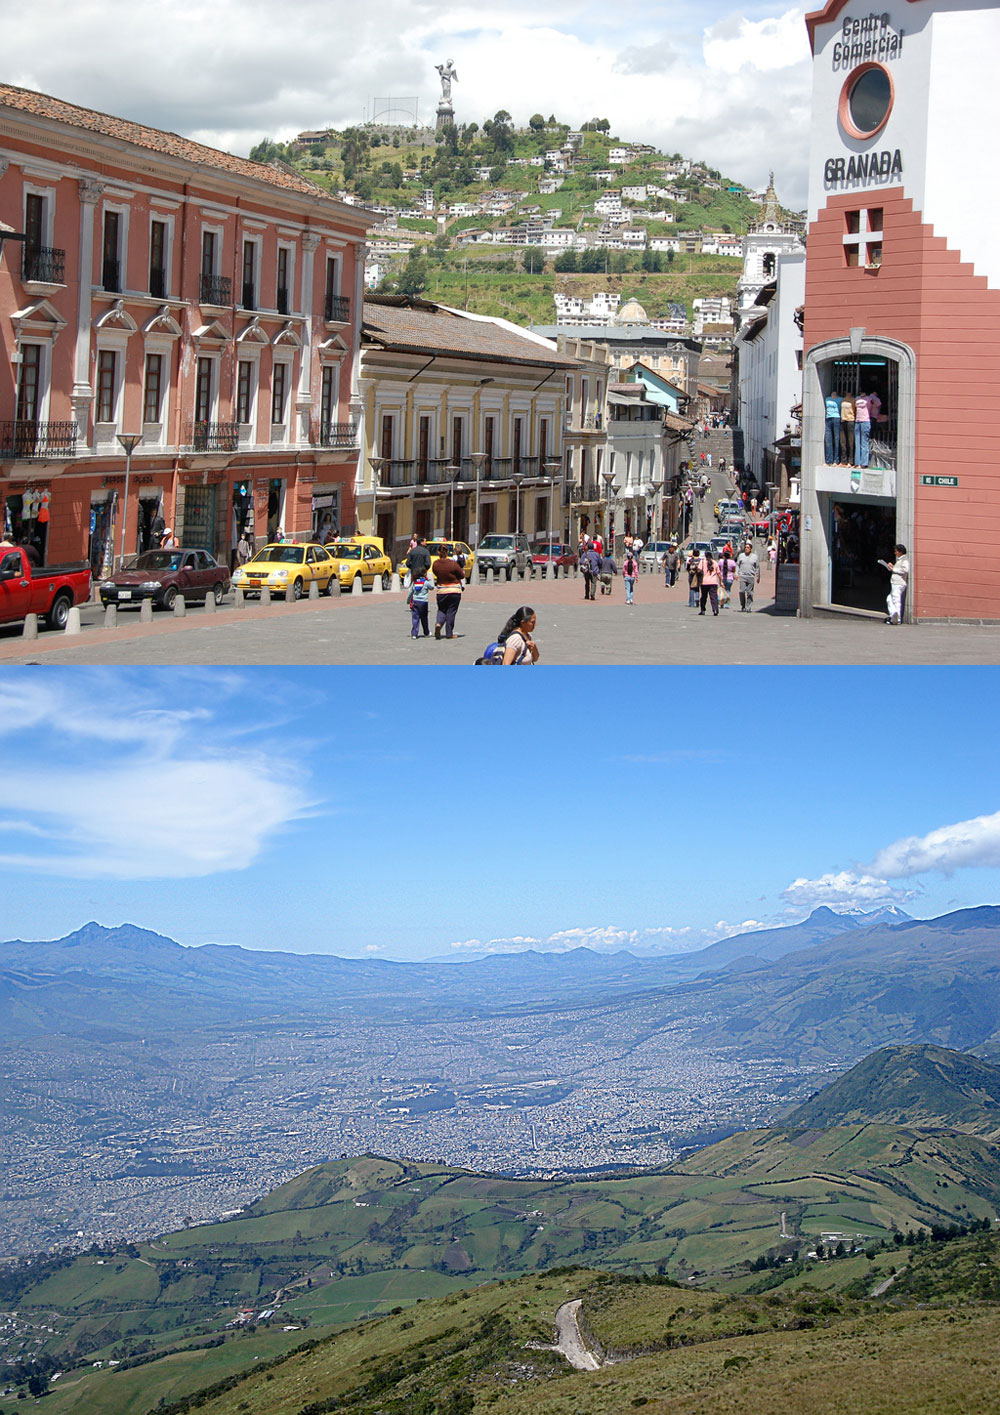 Fakta: Huvudstaden Quito i Ecuador har den mest välbevarade stadskärnan i Latinamerika